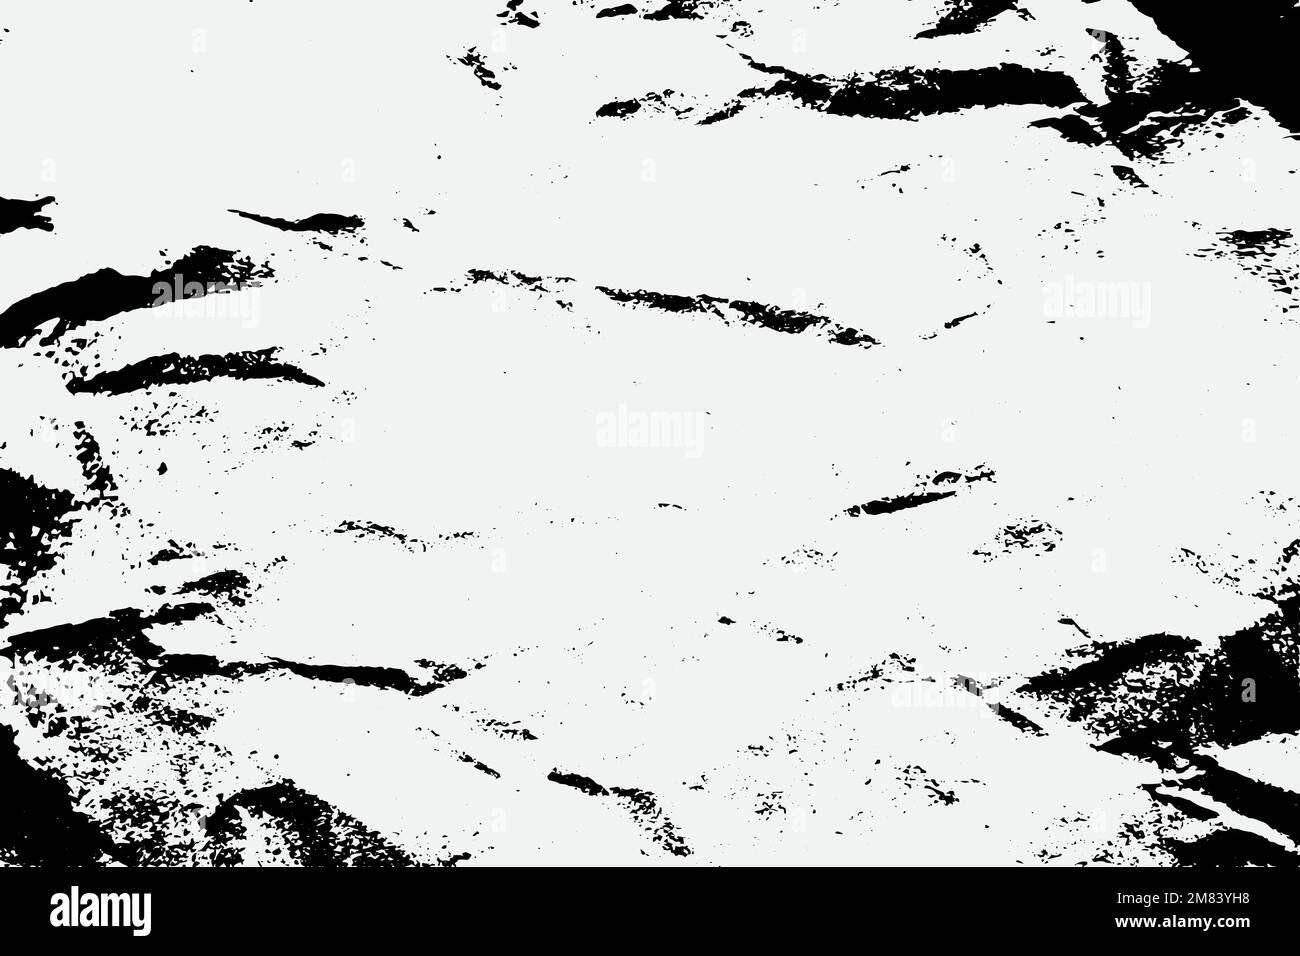 Nero carta bianca vecchia rovinata ruvida grunge graffiata strappata texture. Illustrazione Vettoriale